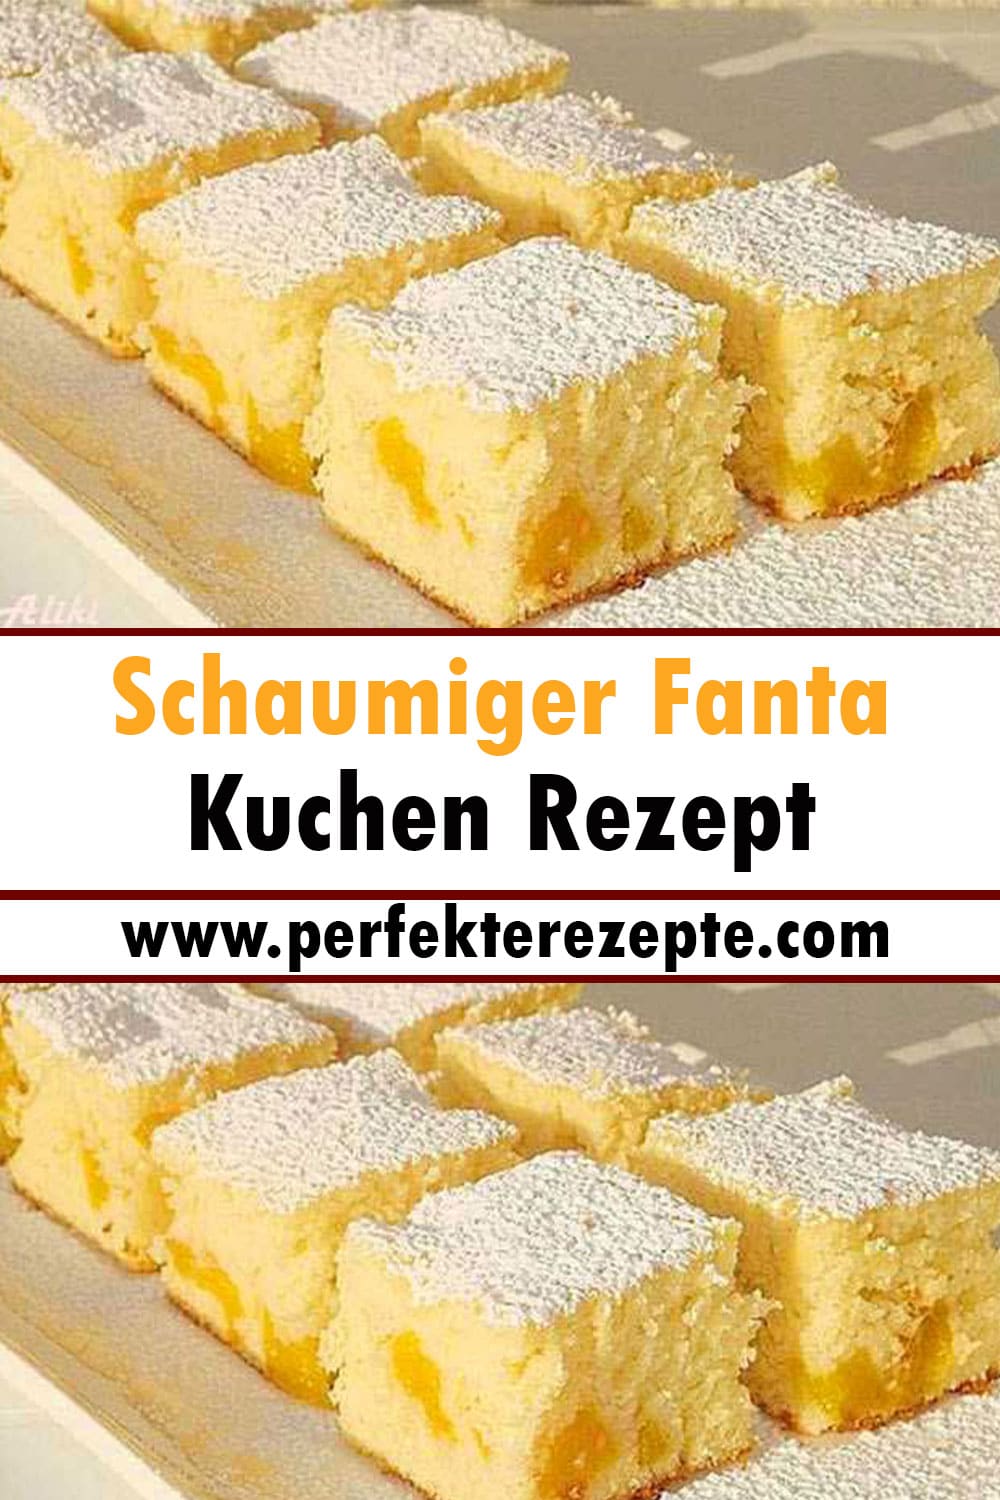 Schaumiger Fanta Kuchen Rezept